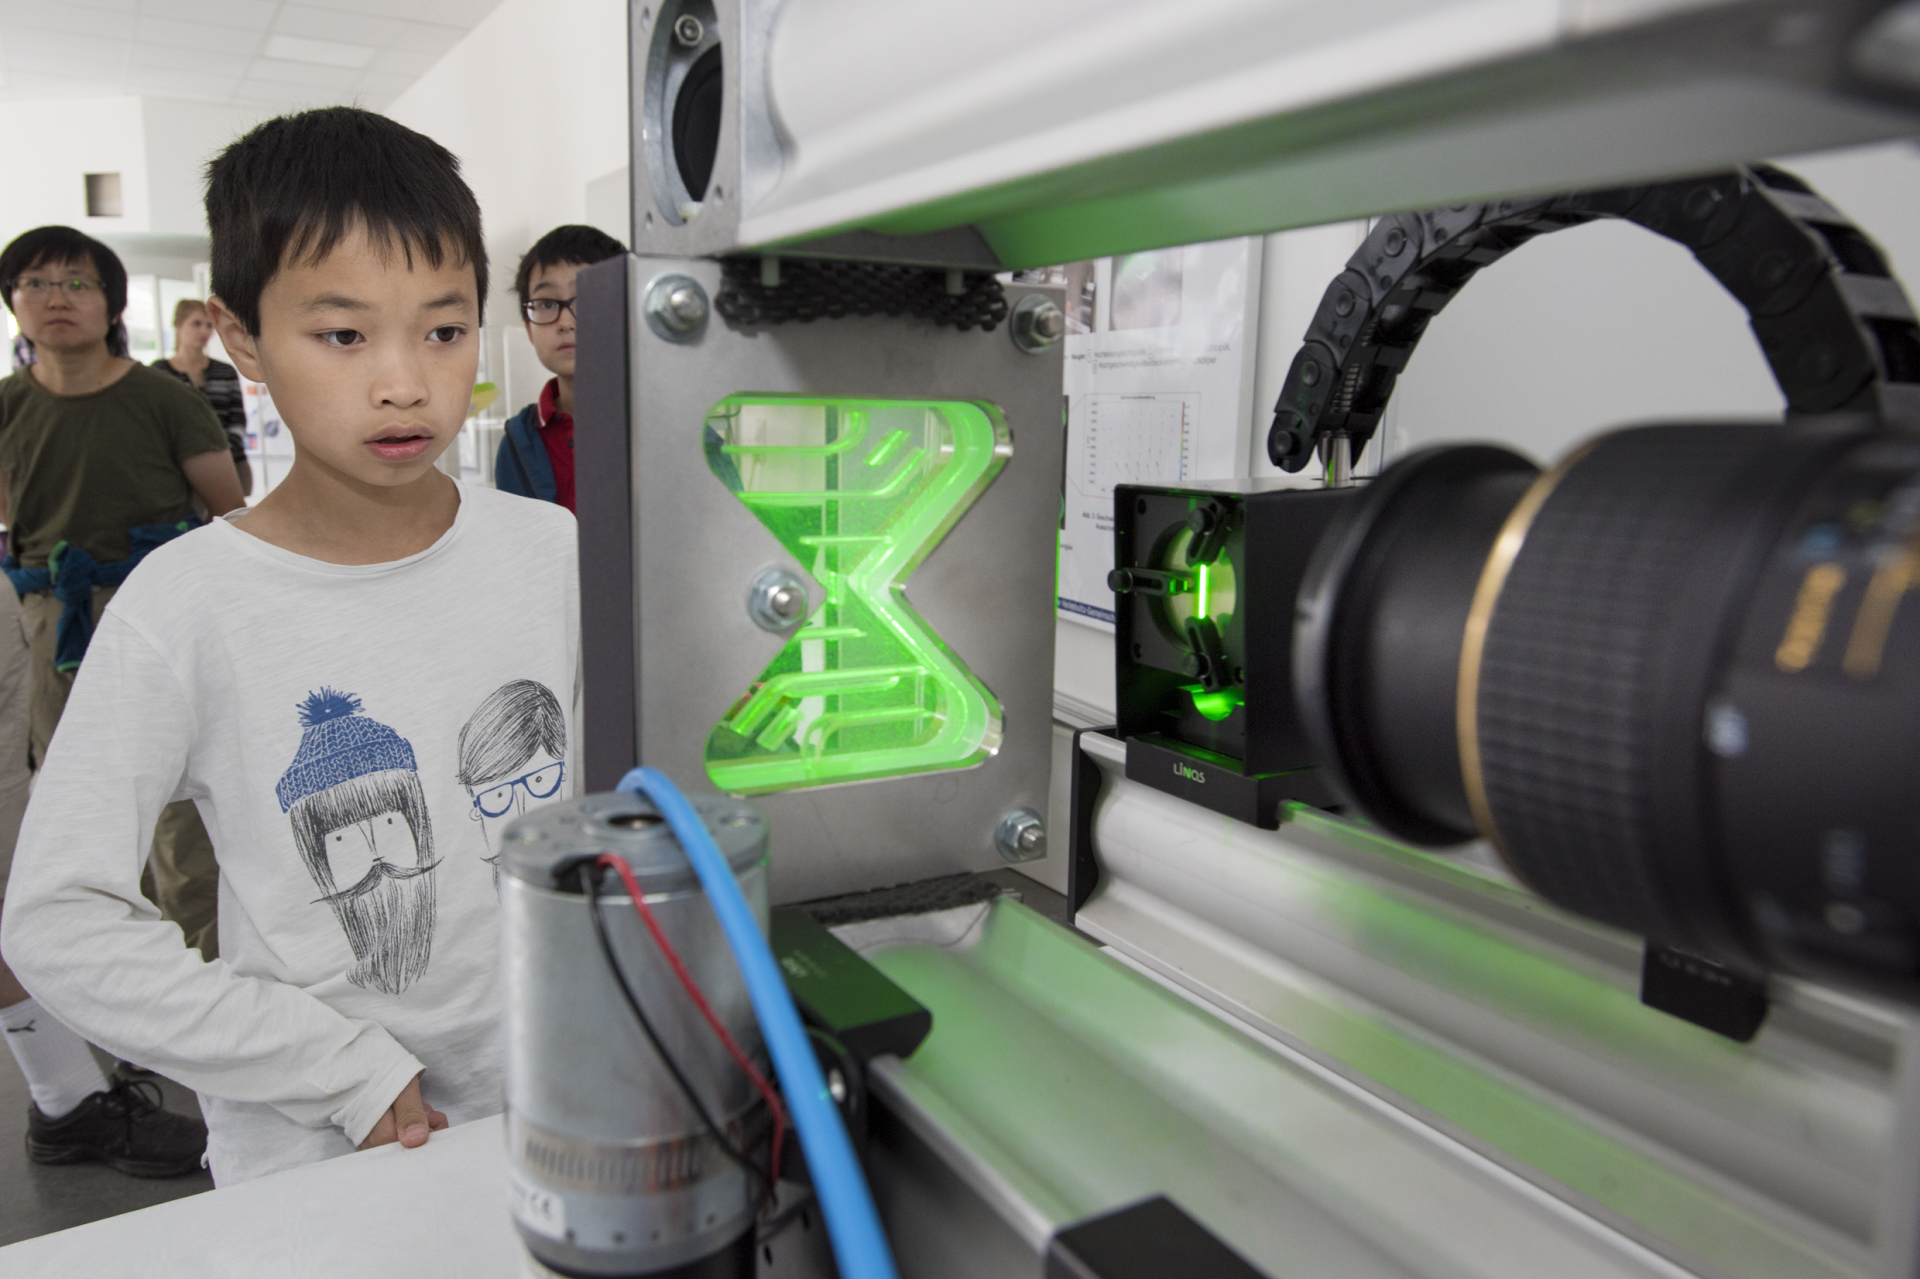 Ein Junge blickt fasziniert auf eine grün leuchtende Laser-Gerätschaft. 